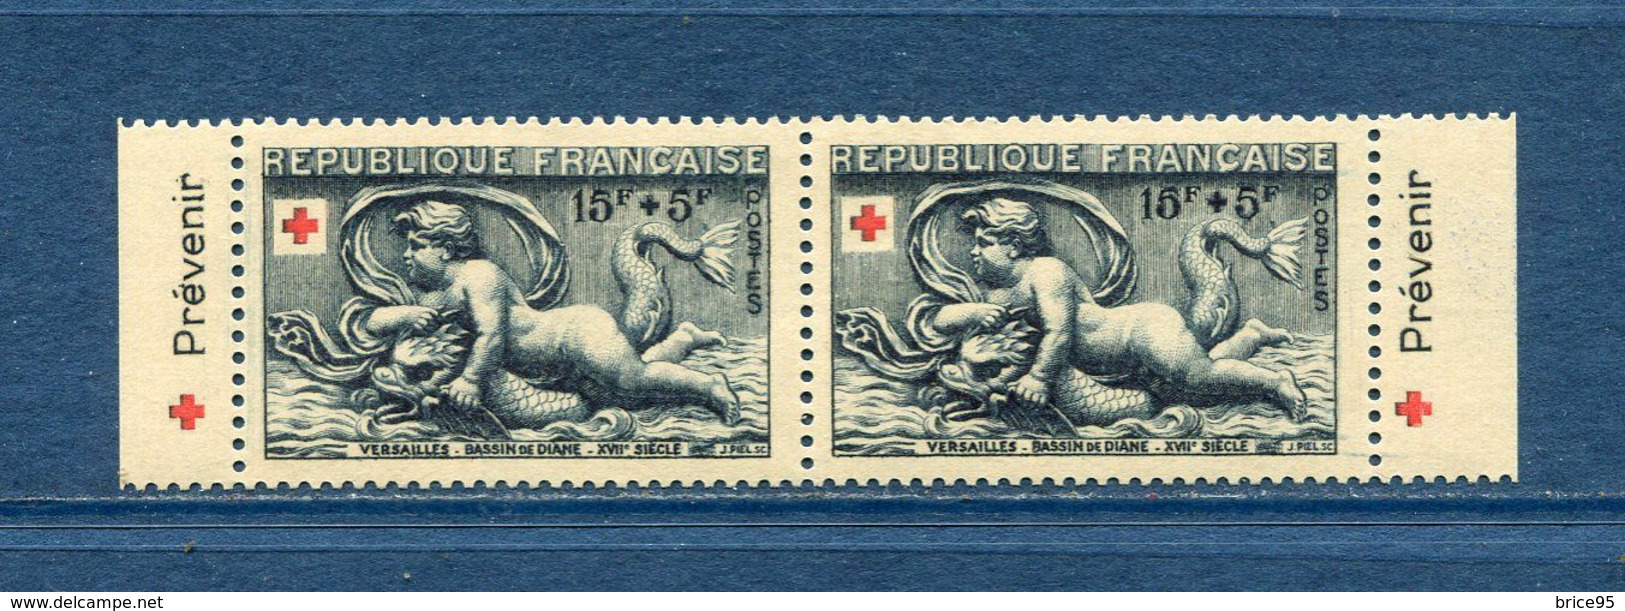 France - Croix Rouge - érinnophilie - Vignette Carnet Croix Rouge 1952 - Neuf Sans Charnière - 1952 - Croix Rouge